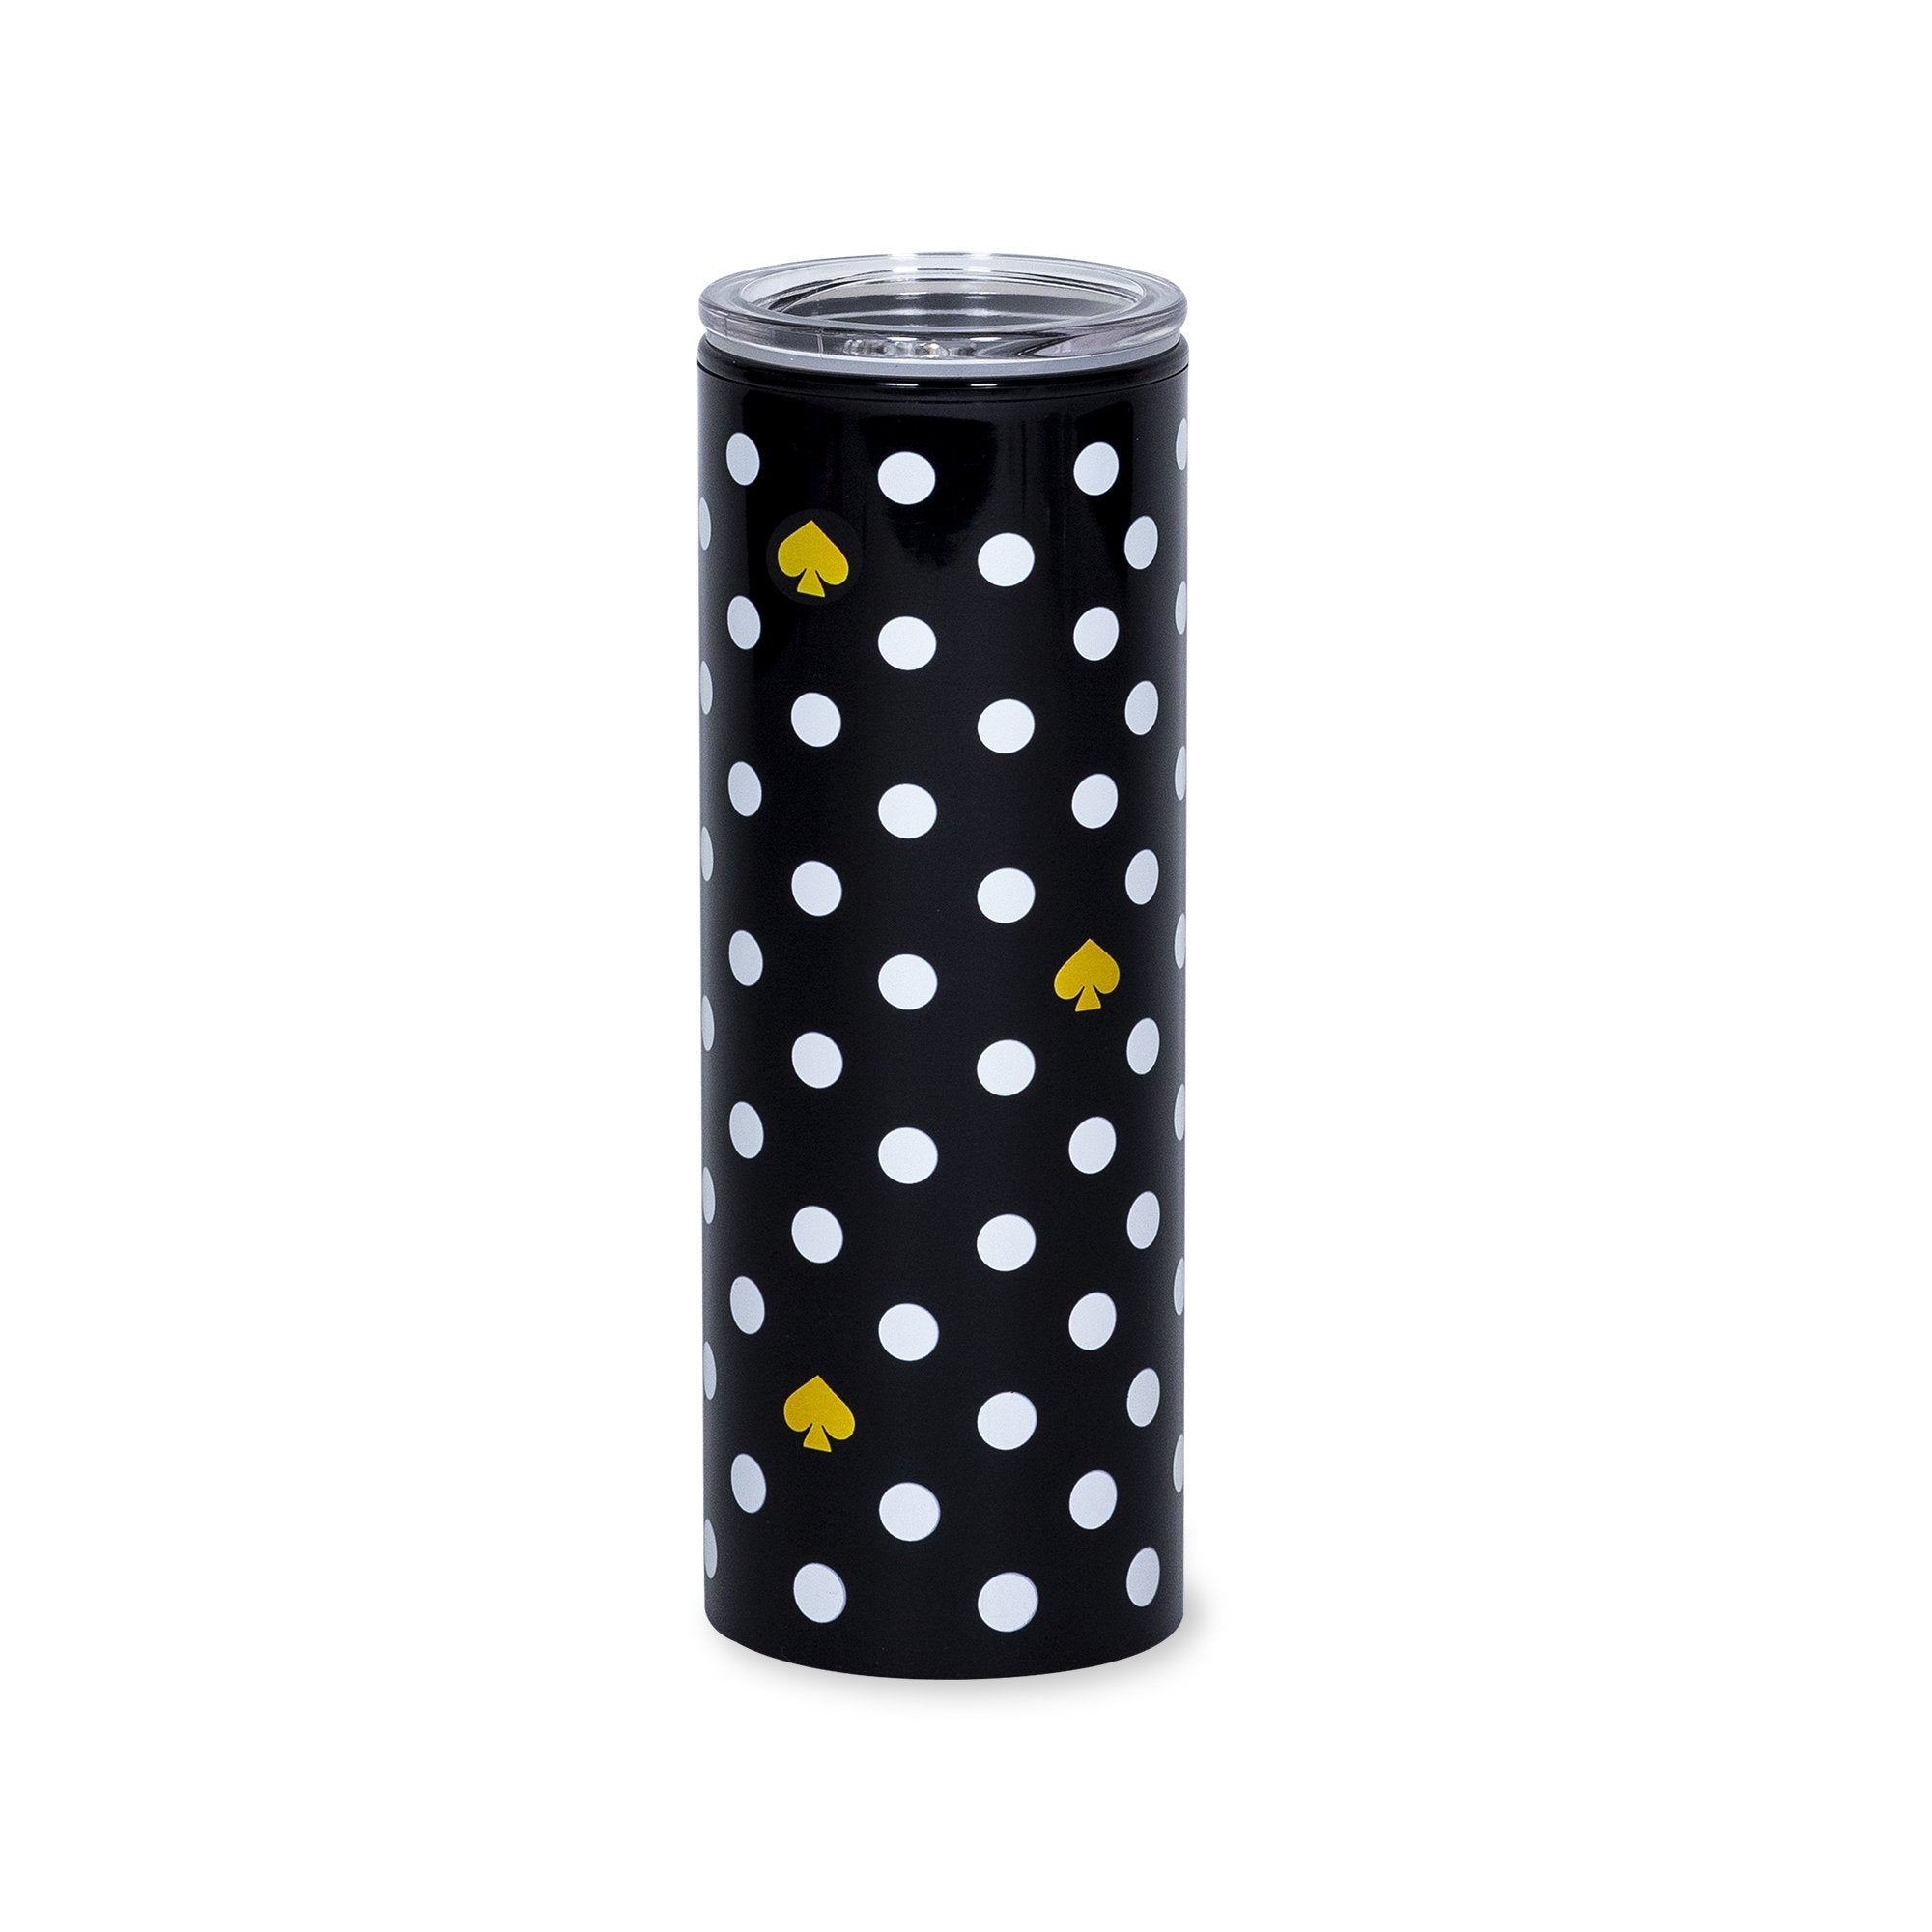 Kate Spade New York Polka Dot Pencil Case - Black